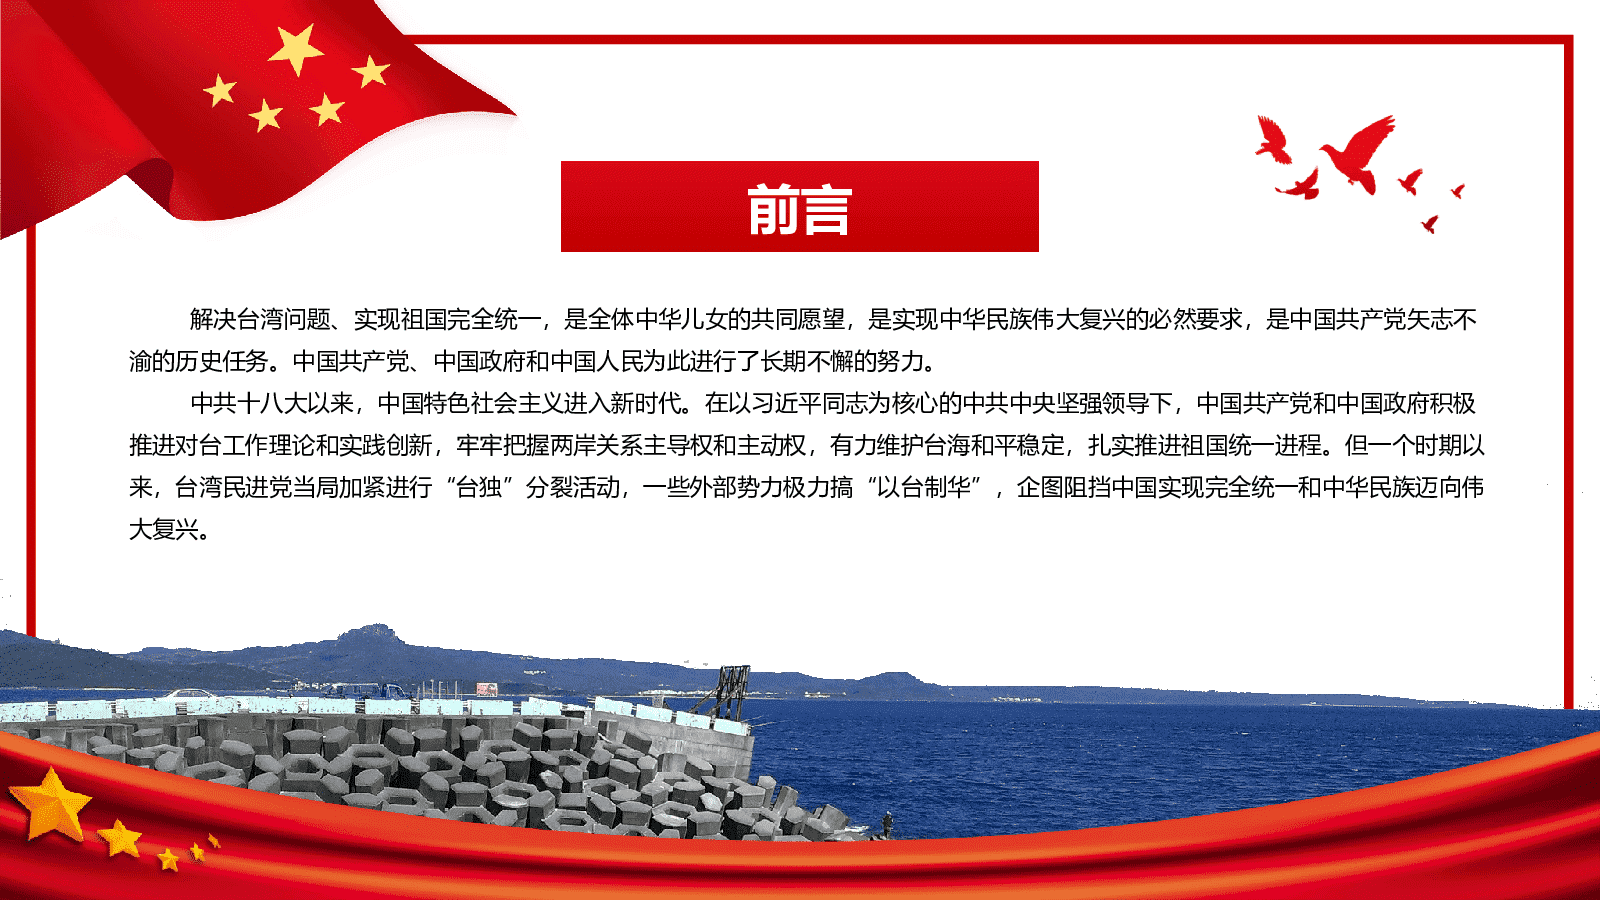 政府工作报告首提“贯彻新时代党解决台湾问题的总体方略”